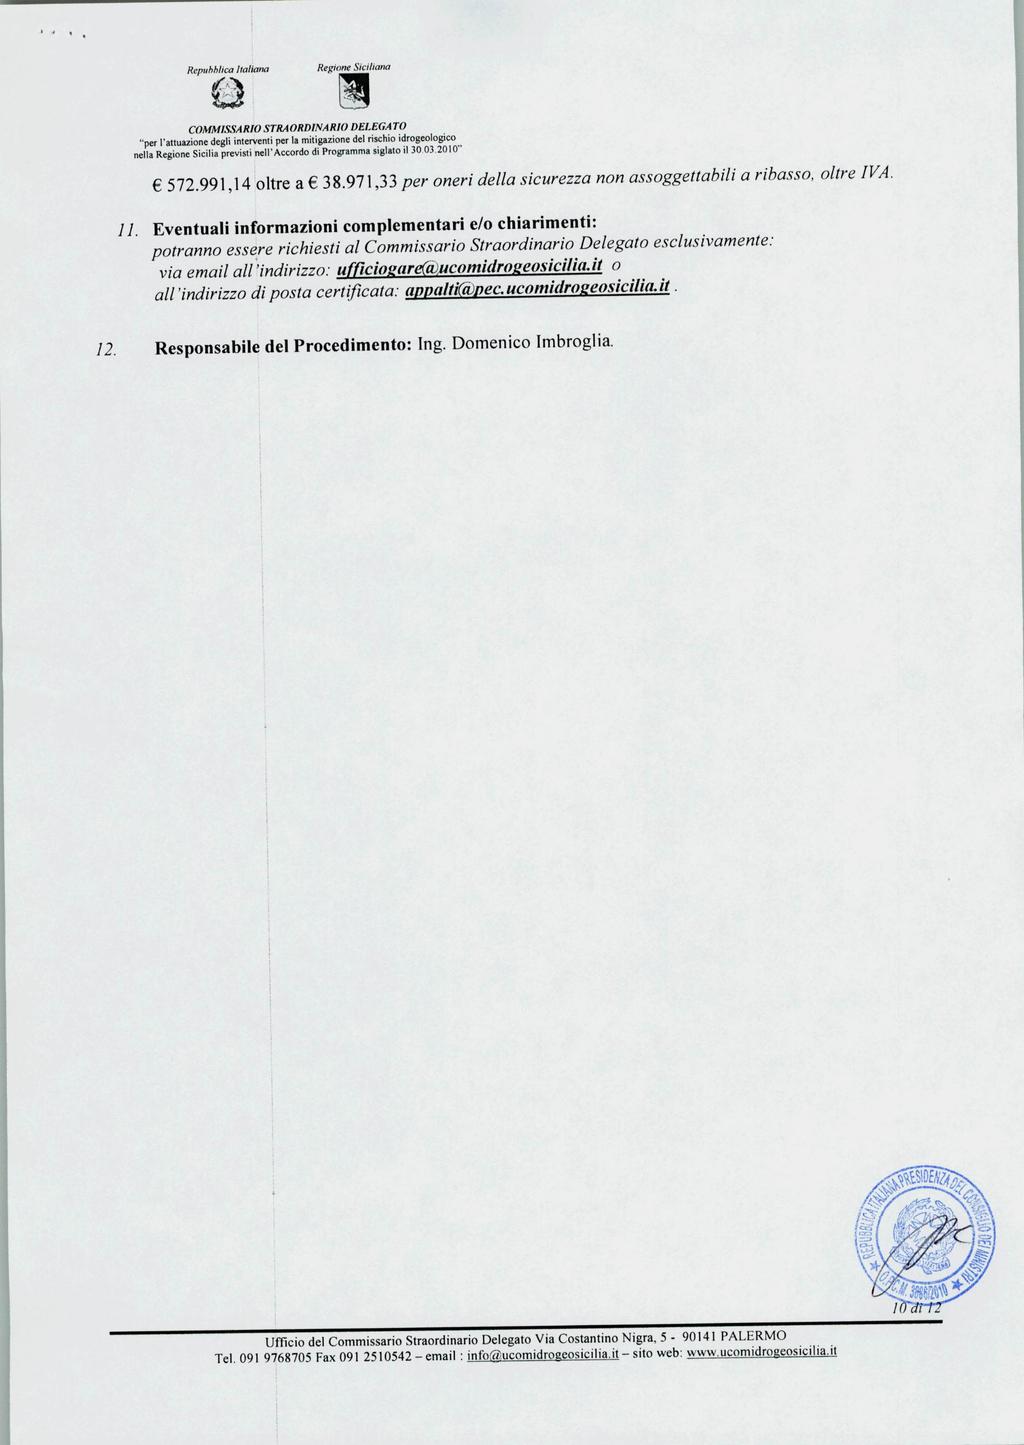 B RegioneSiciliana COMMISSA RIO STRA ORDINA RIODELEGATO nella Regione Sicilia previsti nell'accordo di Programma siglato il 30 03.2010" 572.991,14 oltre a 38.